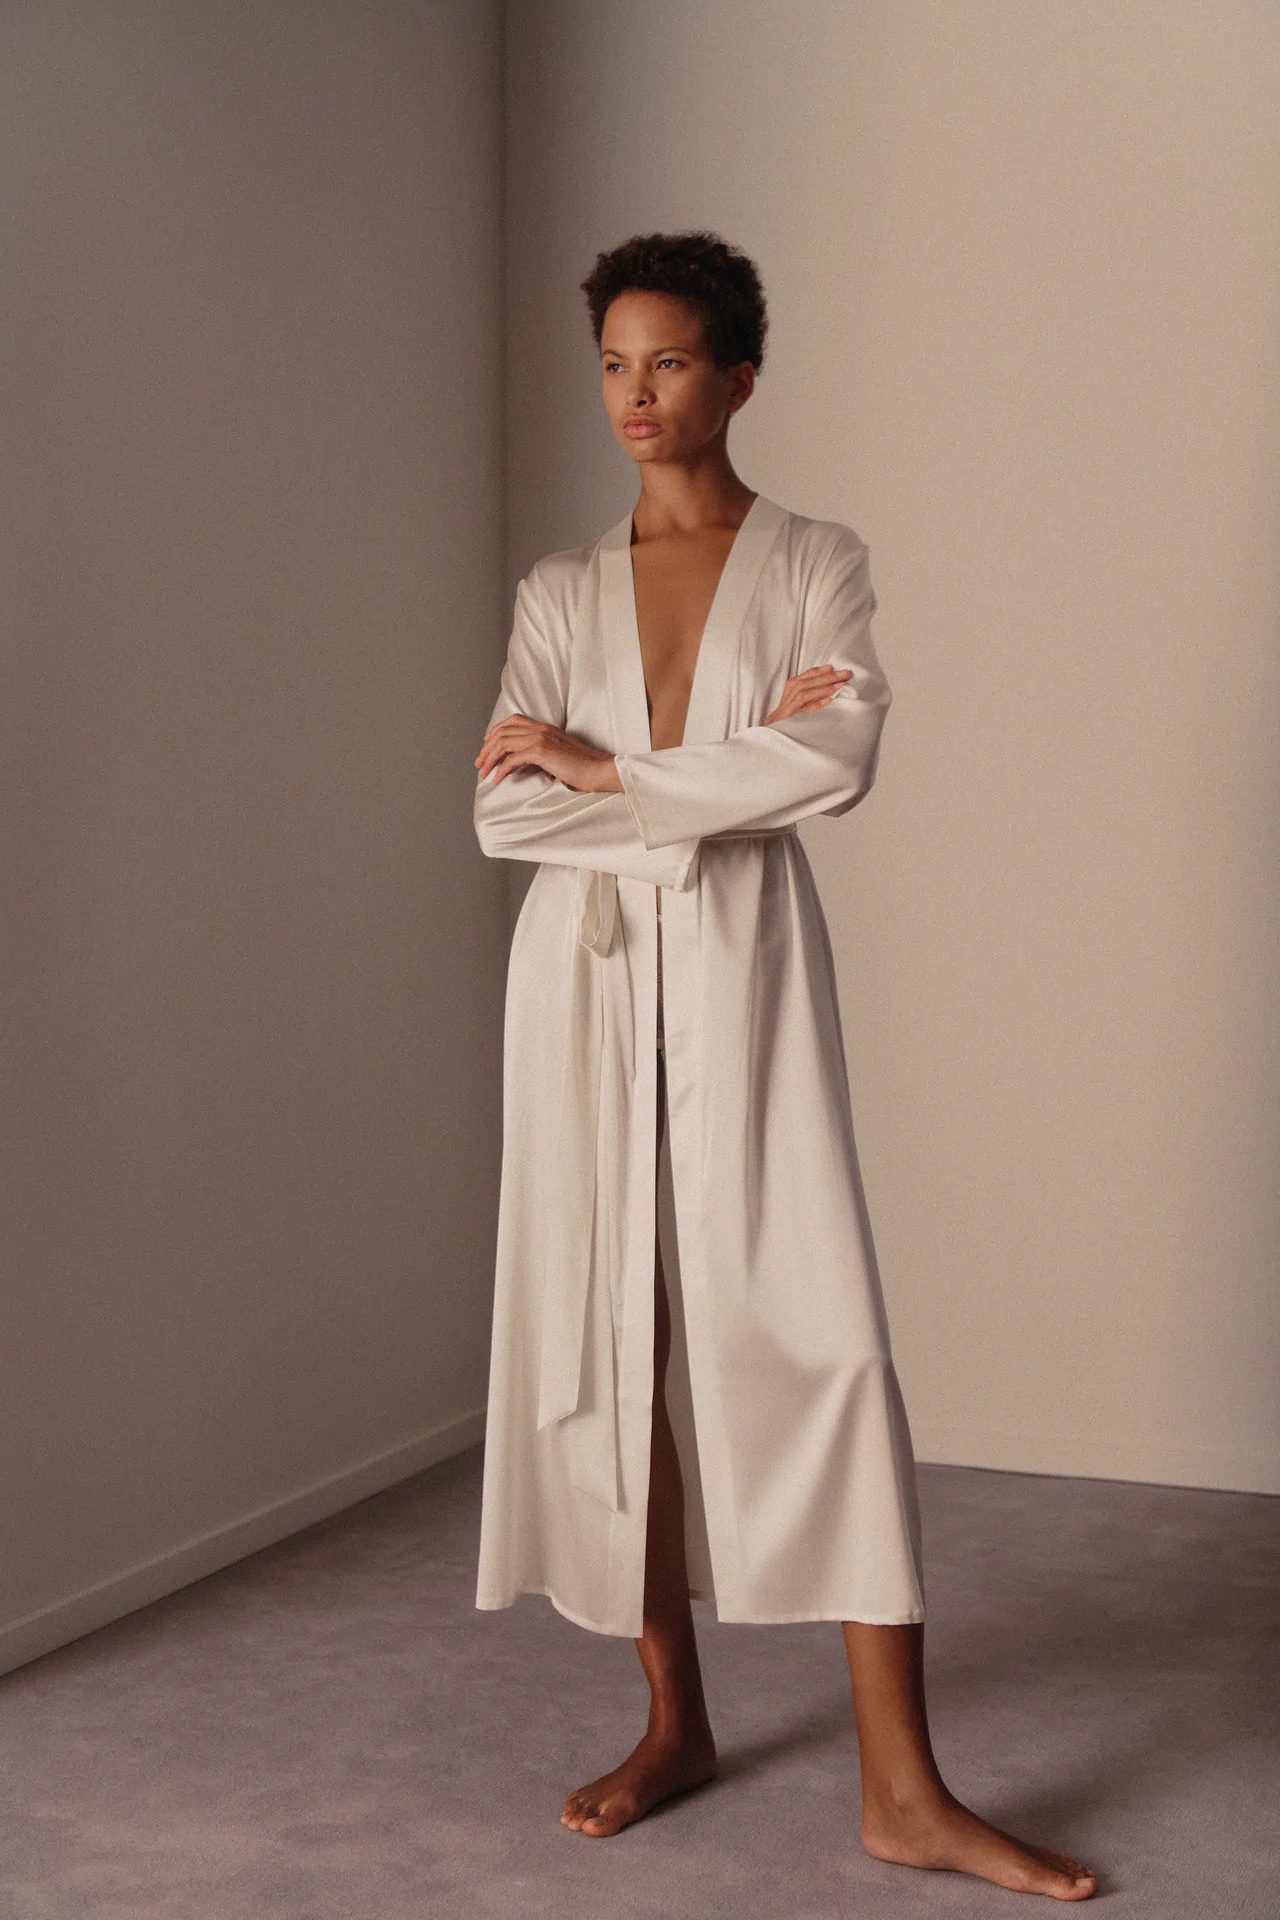 https://estylingerie.com/wp-content/uploads/2020/10/Zara-lingerie-The-Female-Gaze-white-silk-dressing-gown.jpg